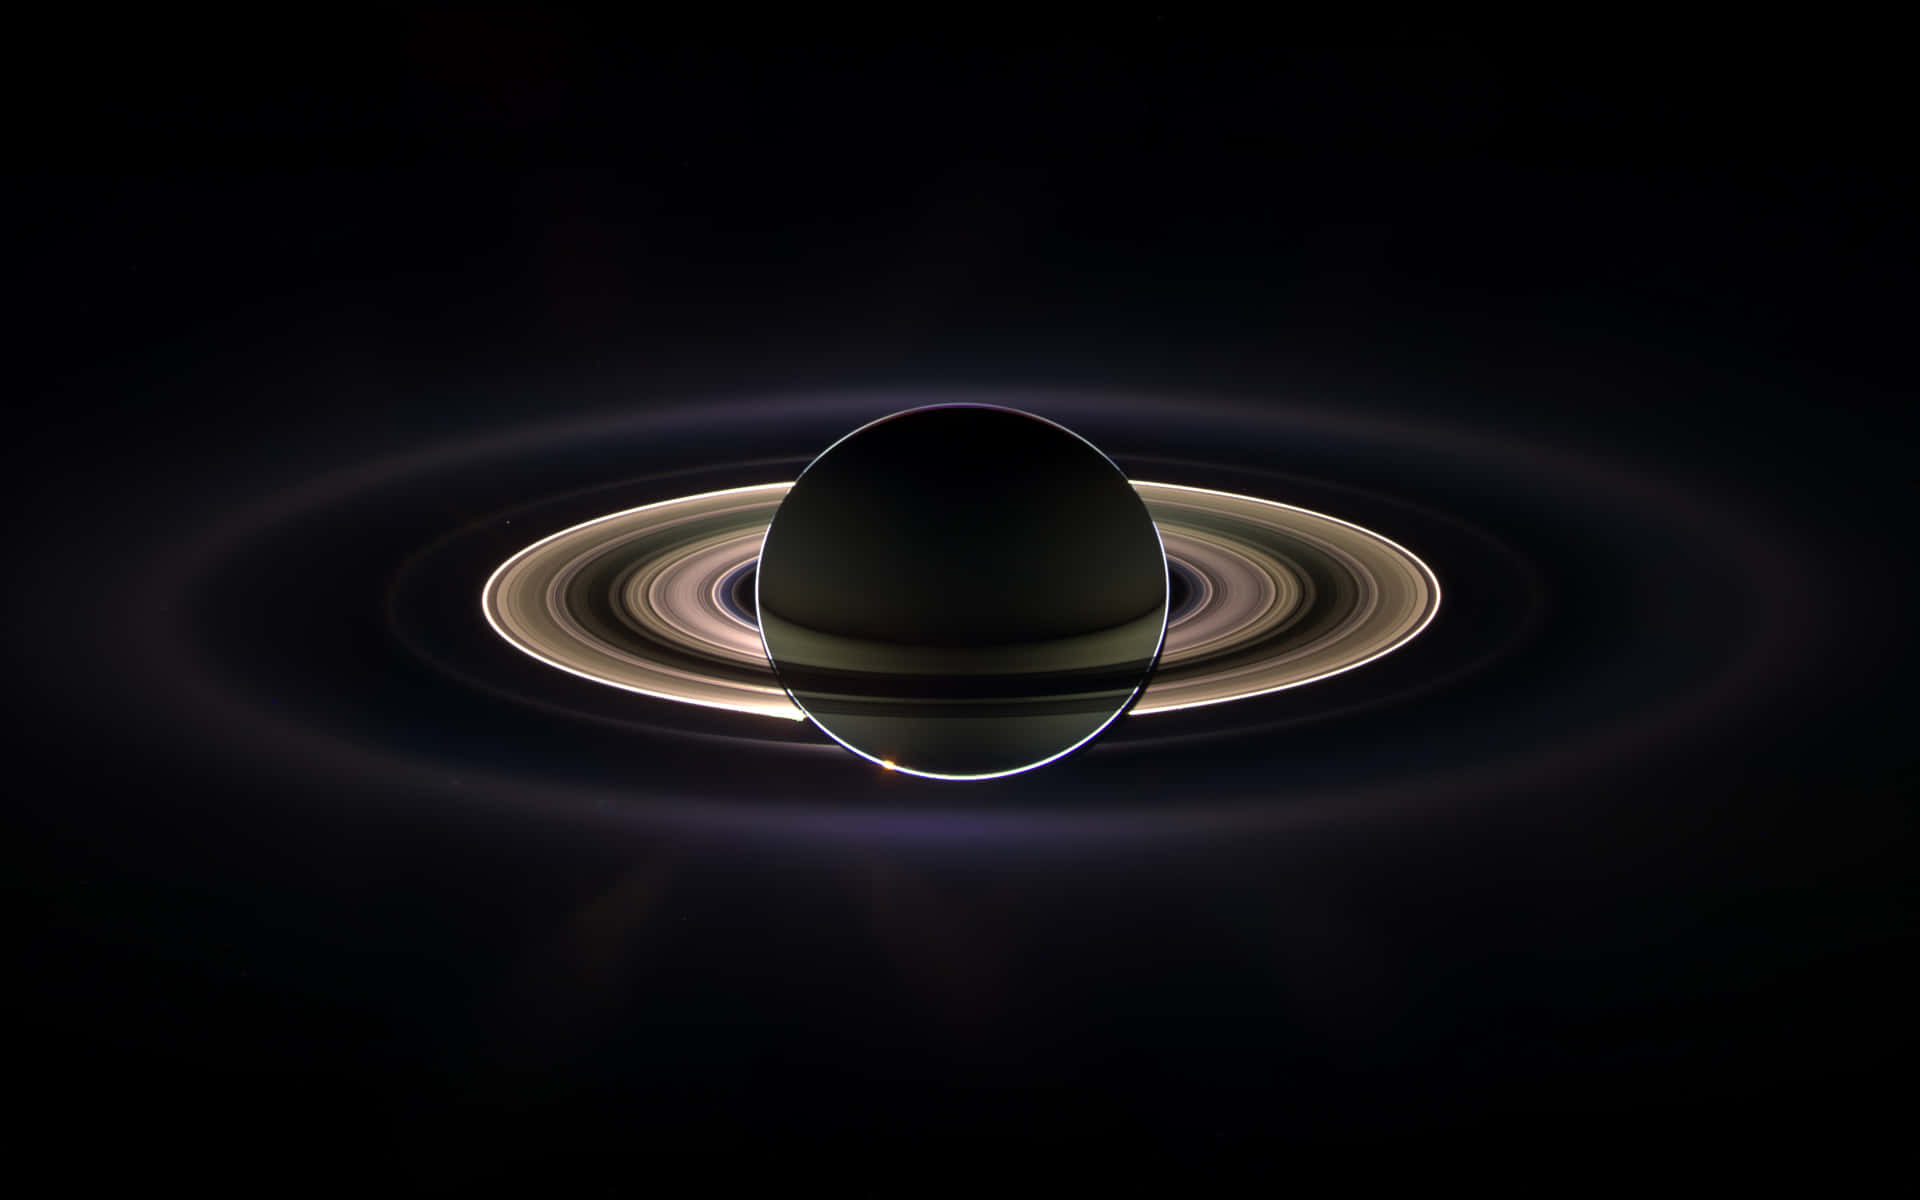 Impresionantevista Del Magnífico Planeta Saturno En El Espacio Exterior.